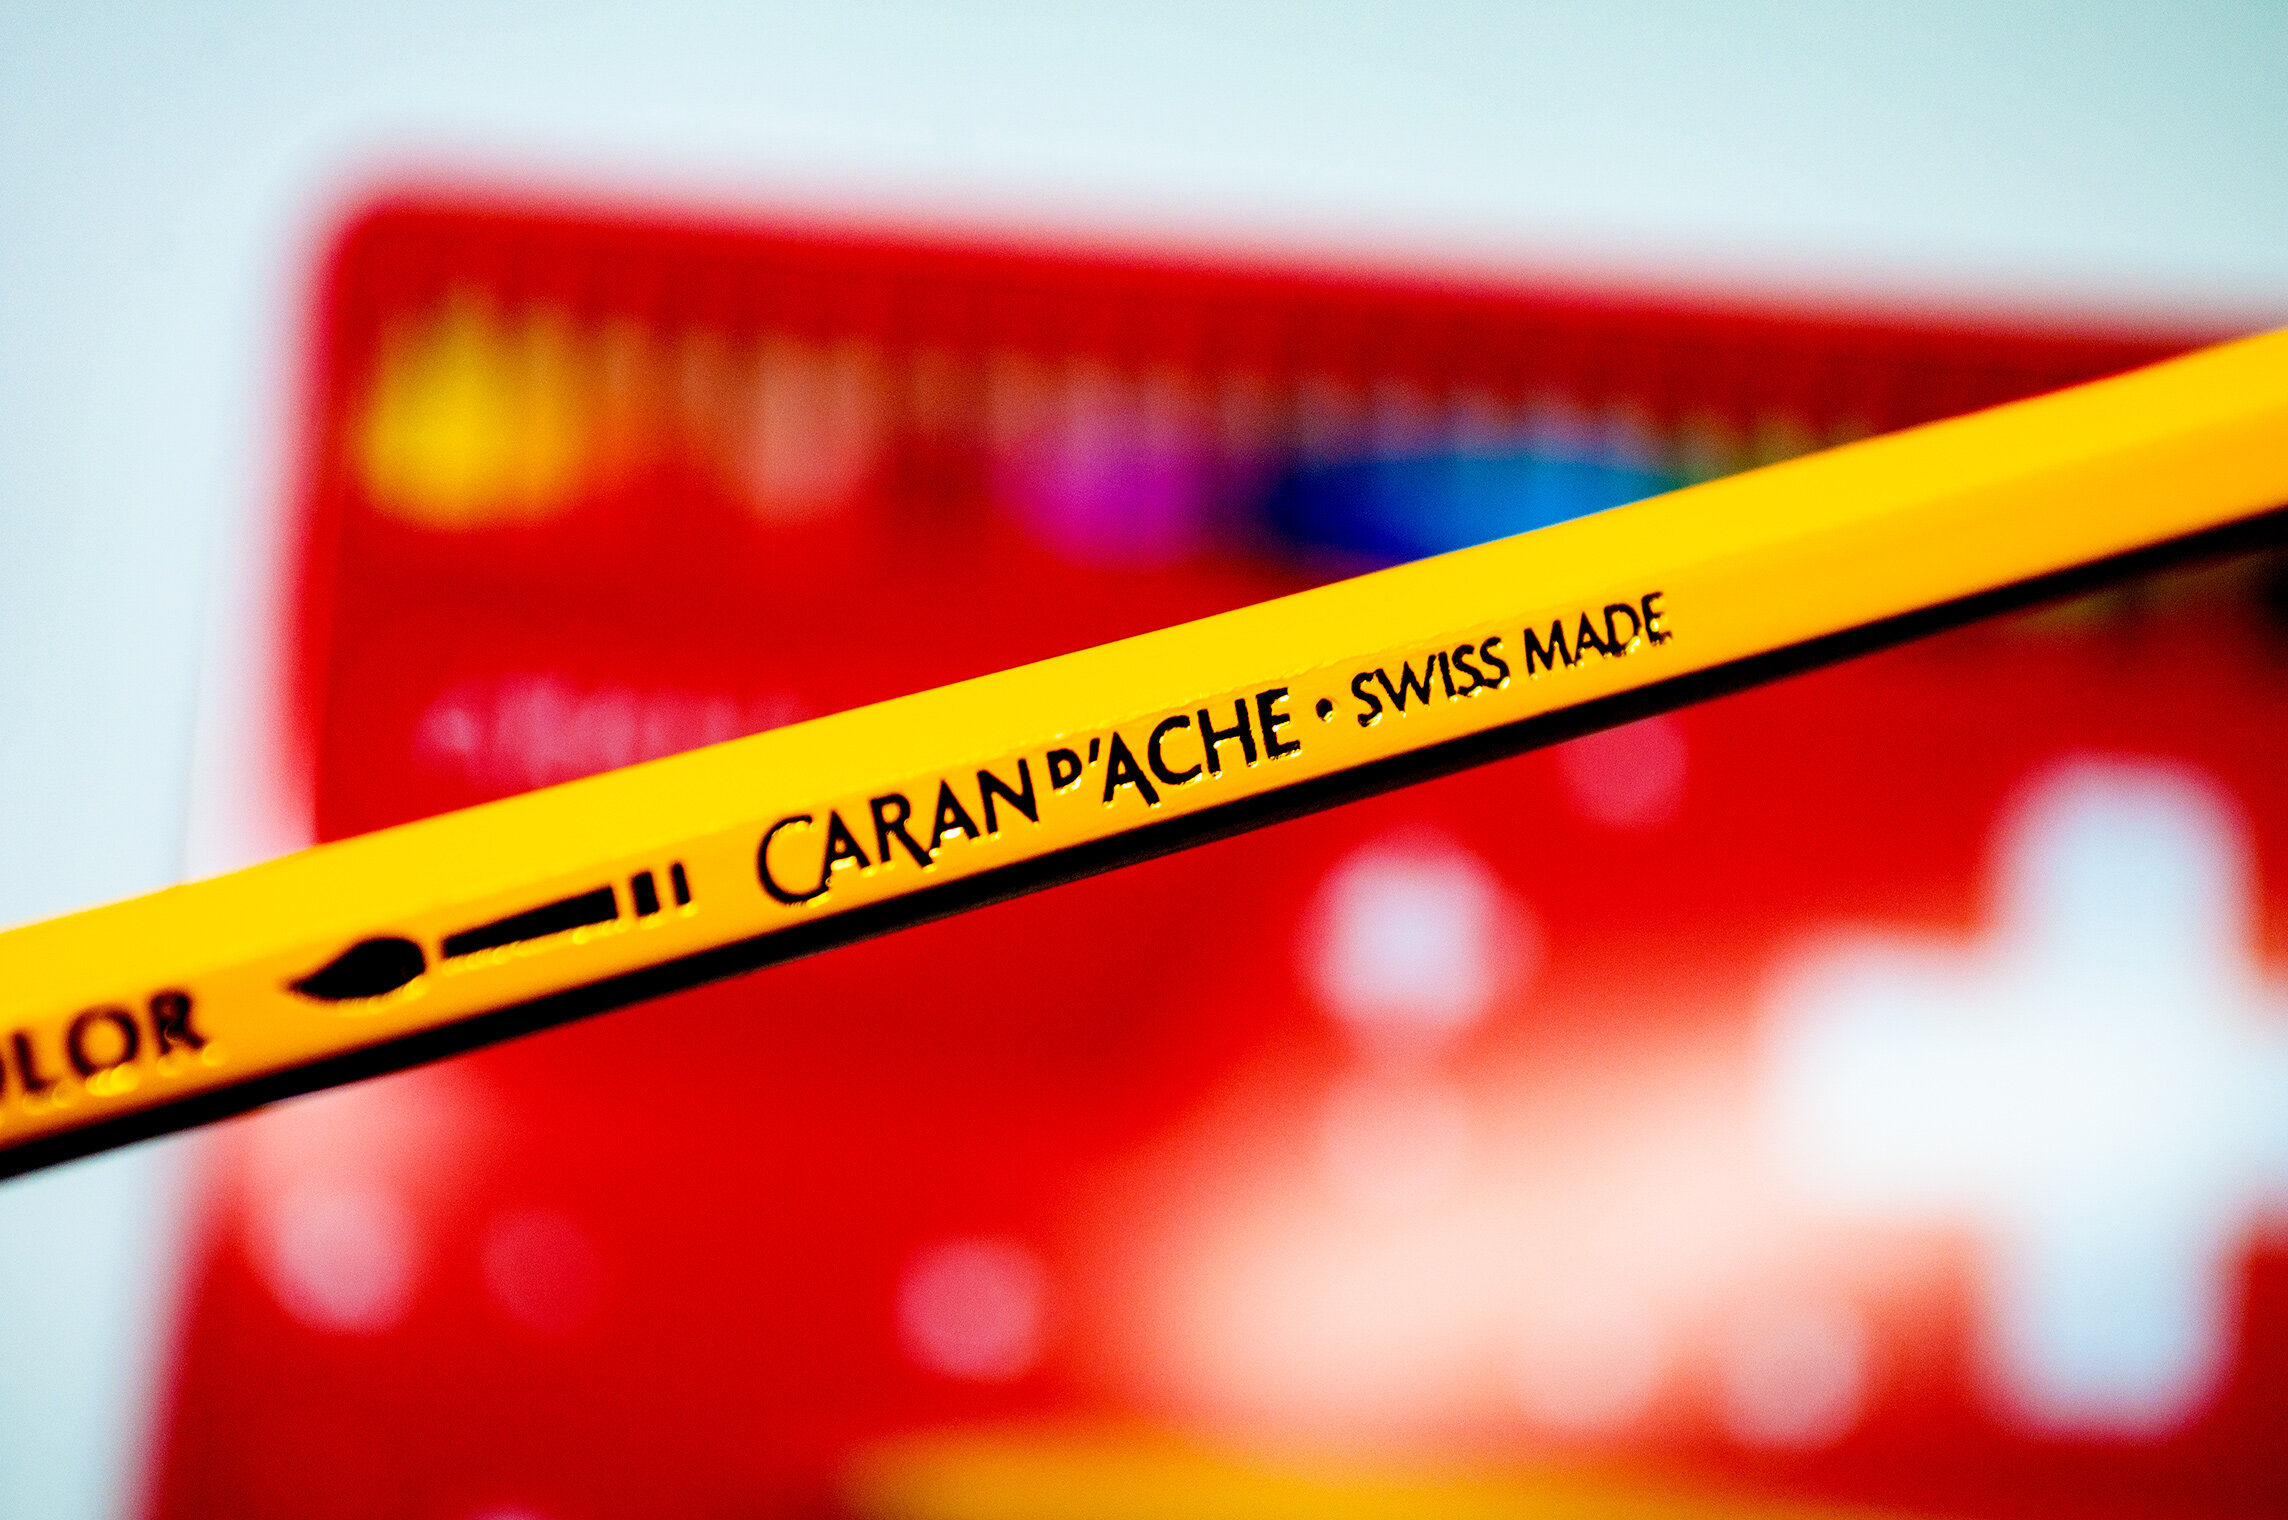 Caran d'Ache Swisscolor Water Resistant Colored Pencil Review